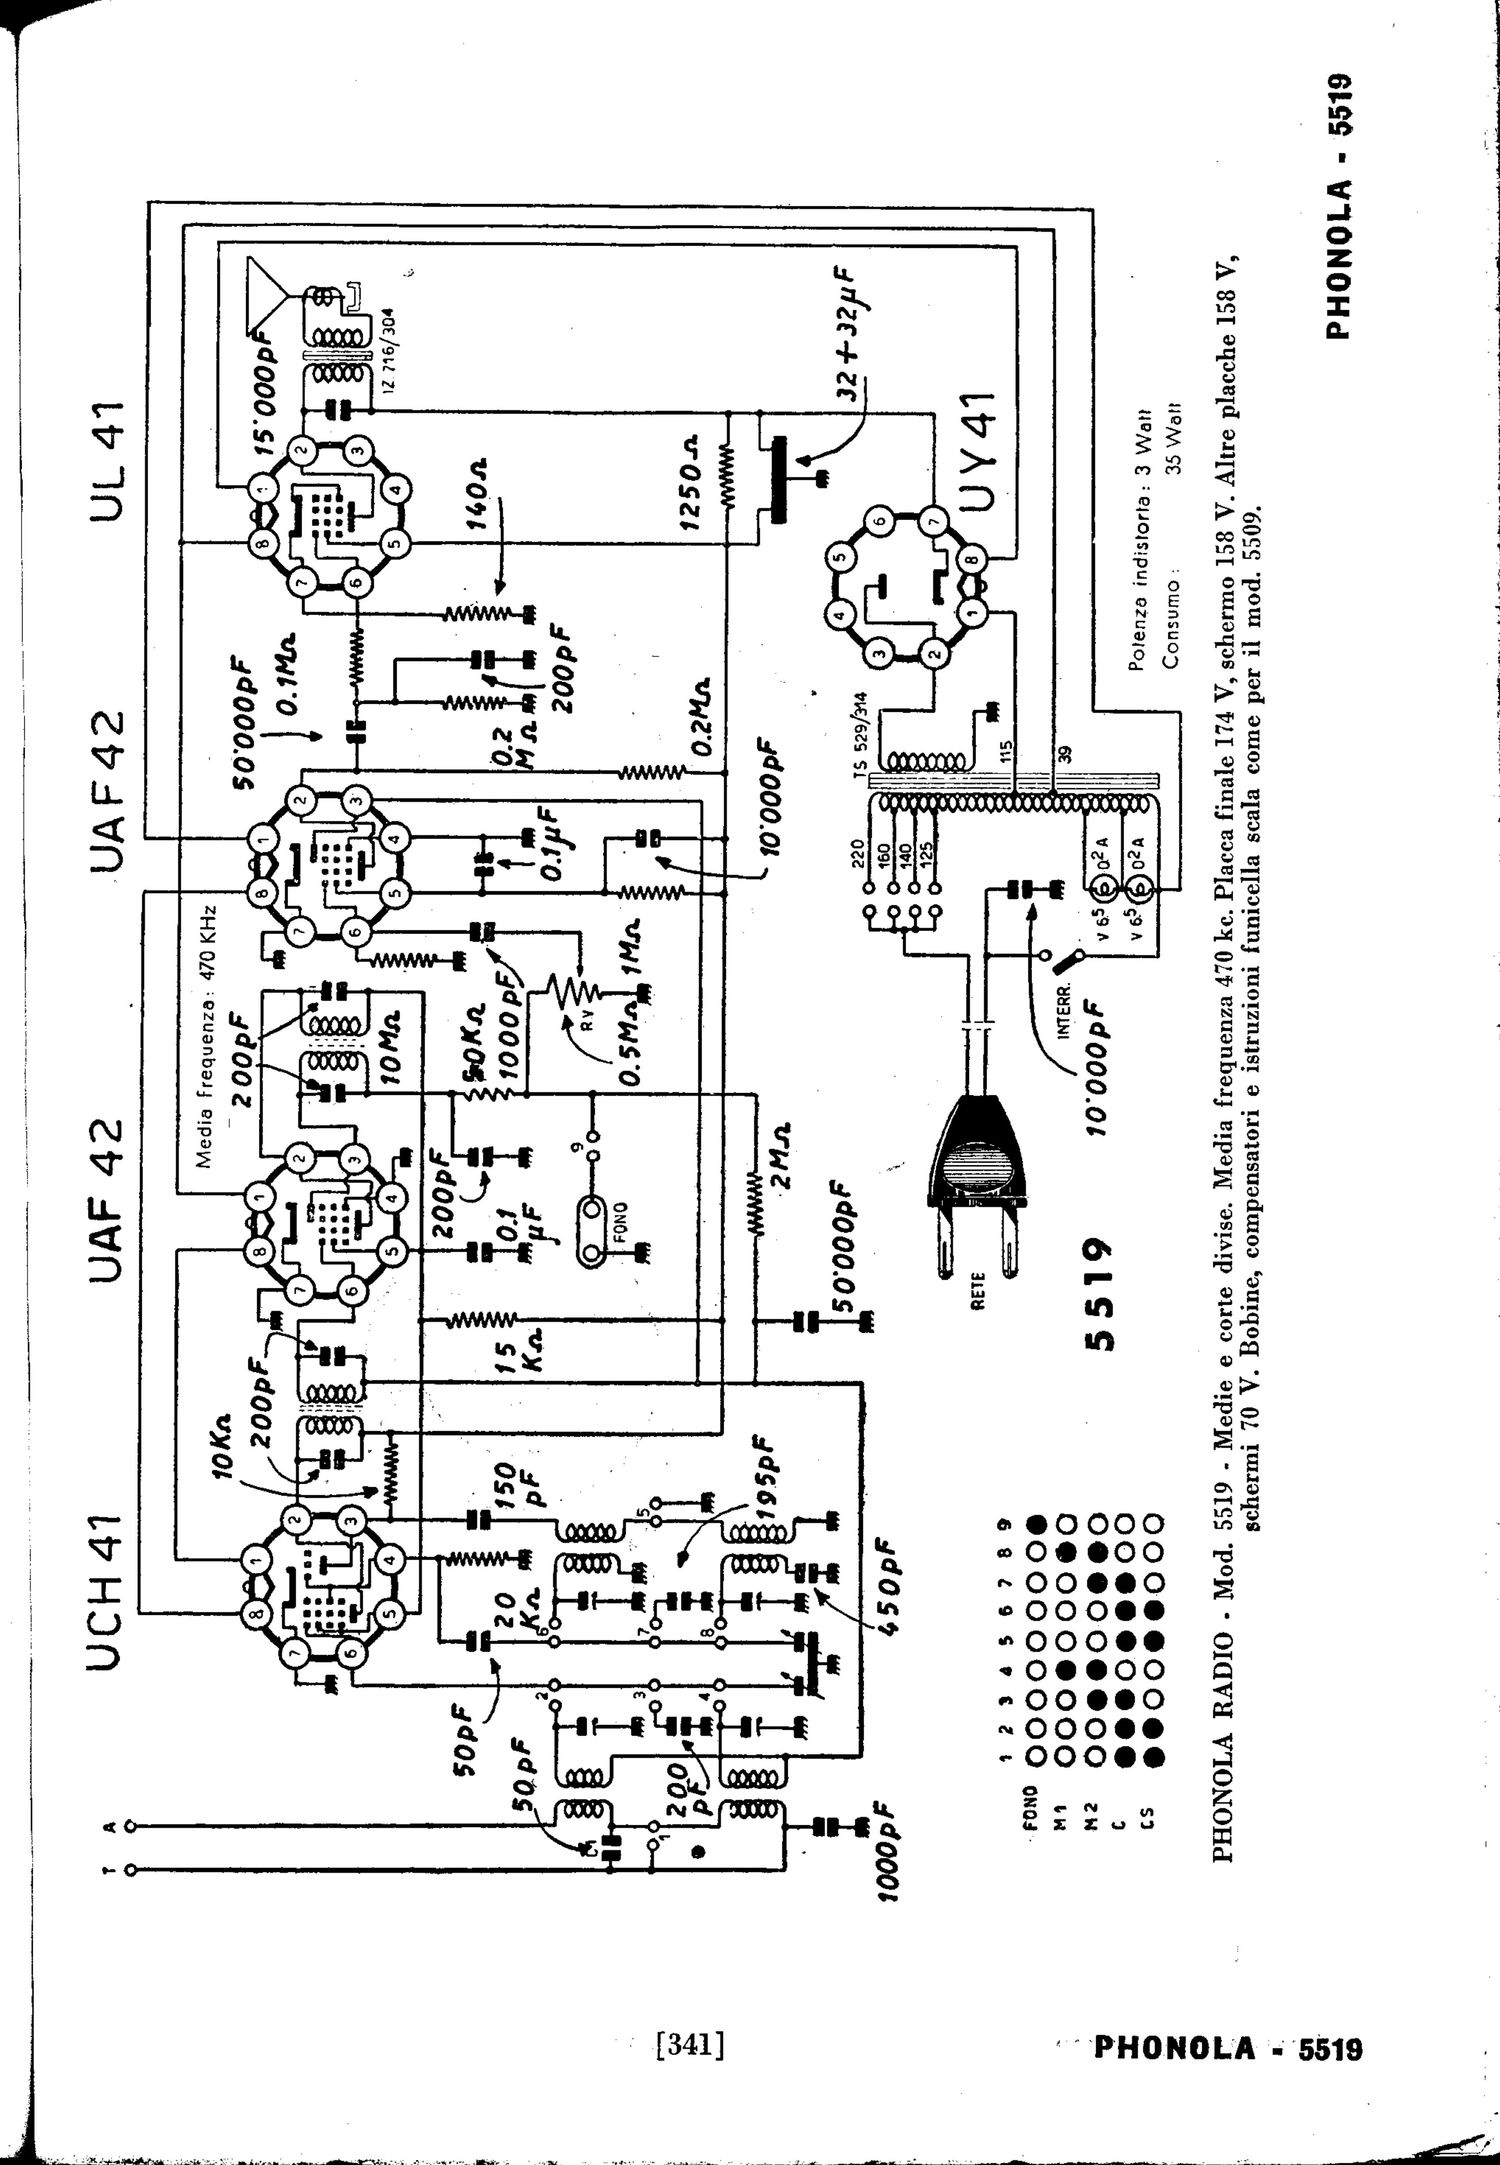 phonola 5519 schematic